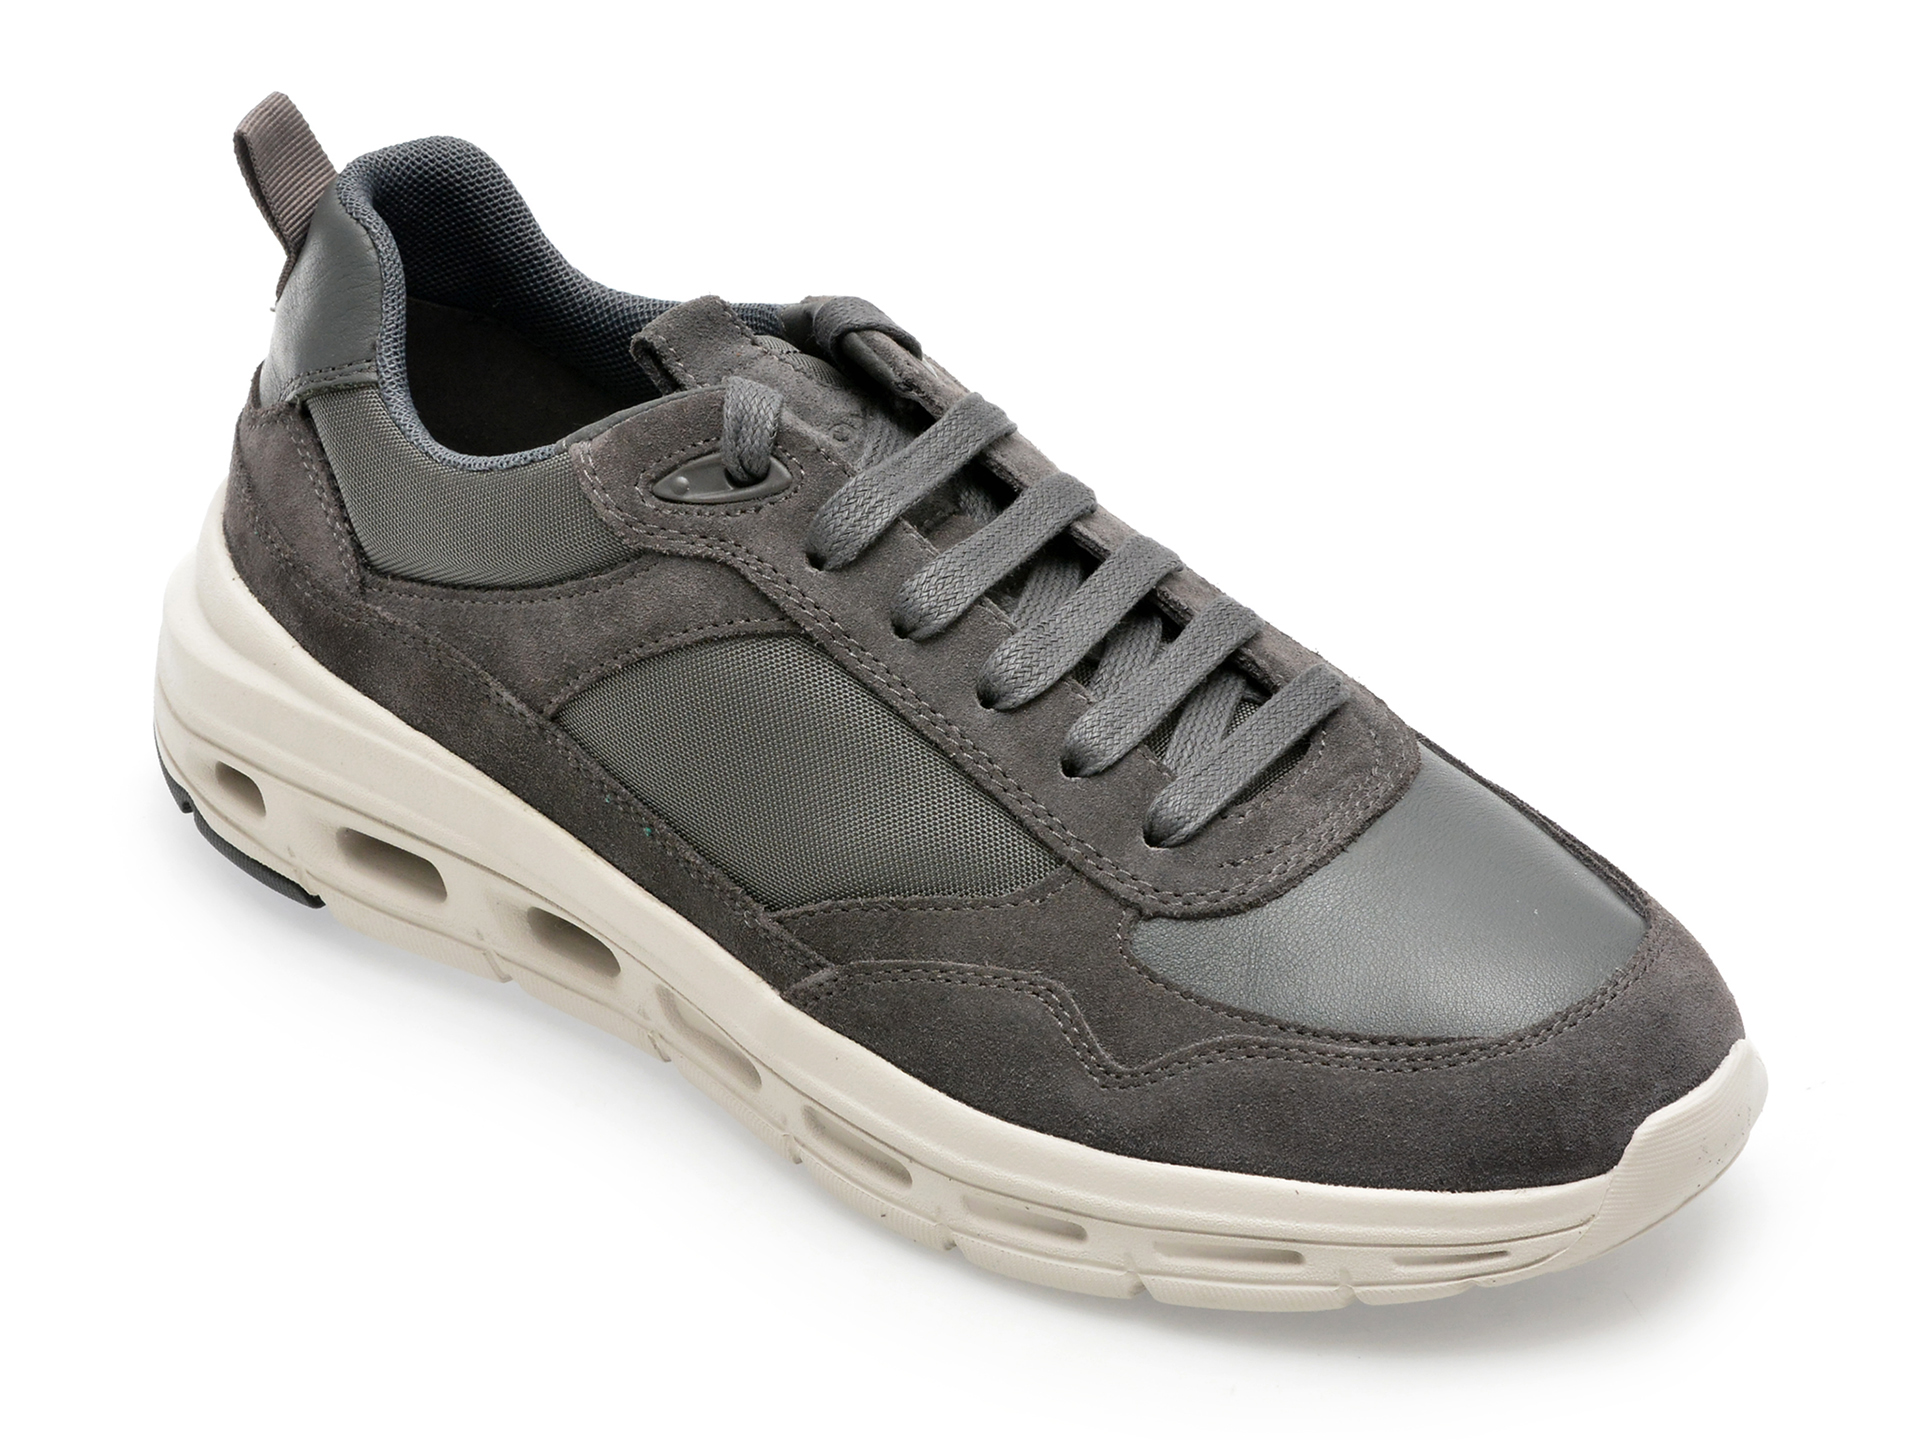 Pantofi GEOX gri, U36FQA, din piele naturala si material textil